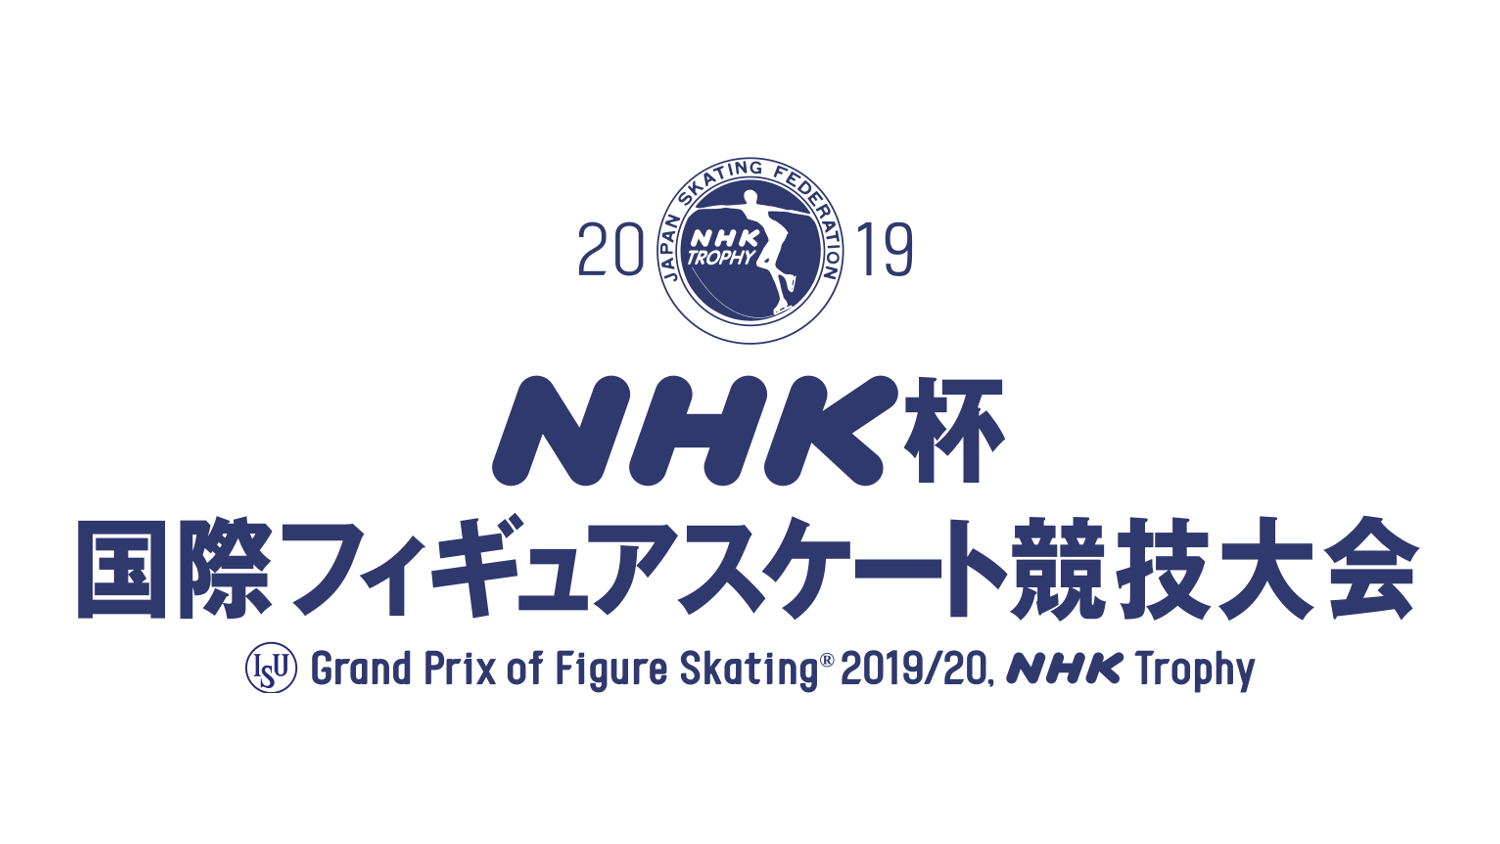 19 Nhk杯国際フィギュアスケート競技大会公式チケットトレード開始 株式会社tixplusのプレスリリース